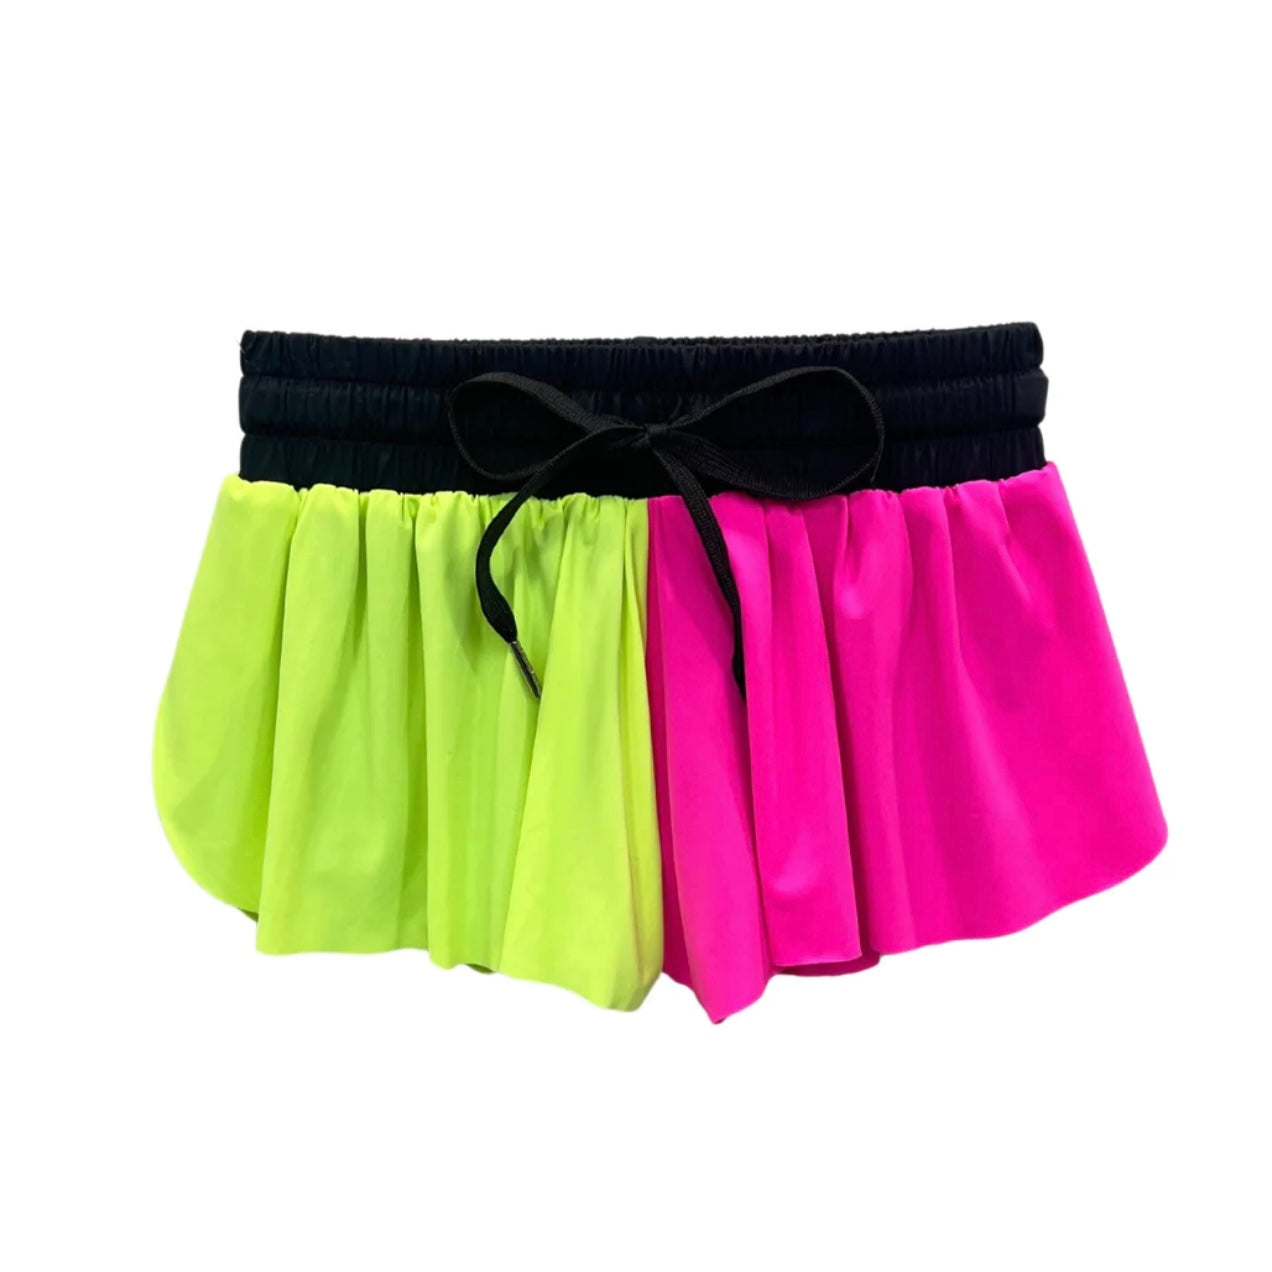 Katie J NYC Girls Tween Farrah Shorts - Neon Colorblock